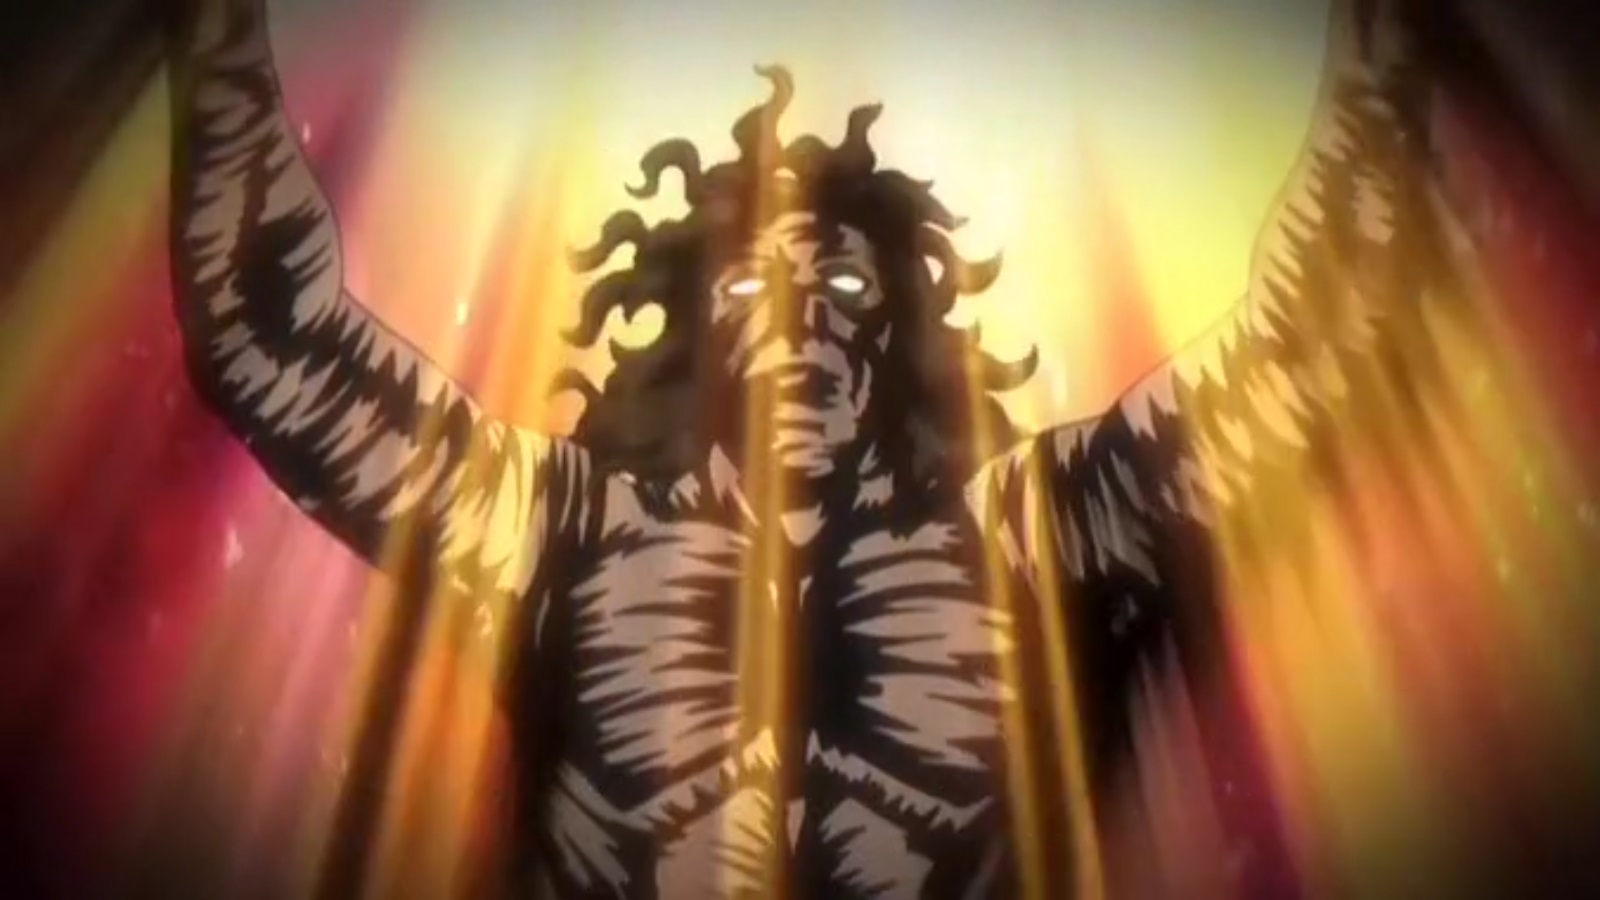 Hentai Sex Demon Temple - Hentai Movie Hot Universe Dark Demon Anime | HentaiMovie.Tv